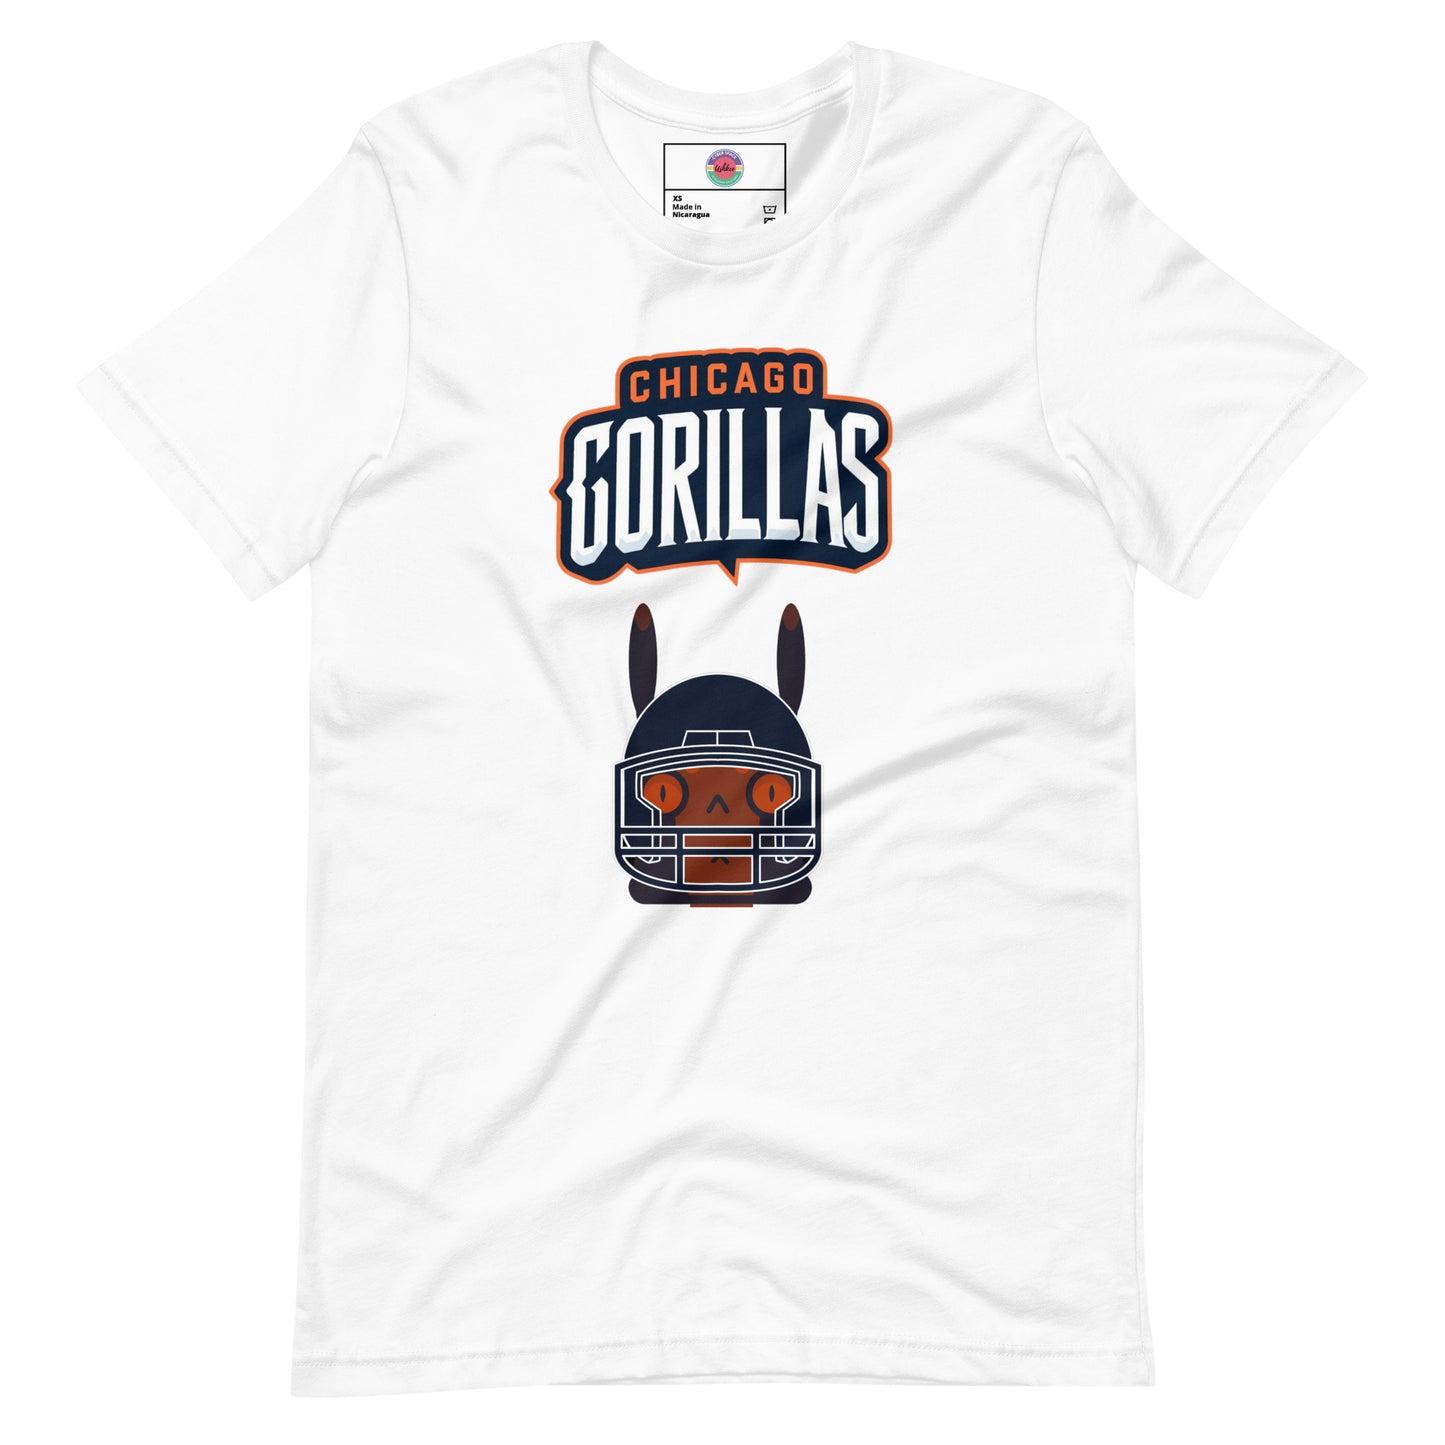 Chicago Gorillas F Unisex t-shirt